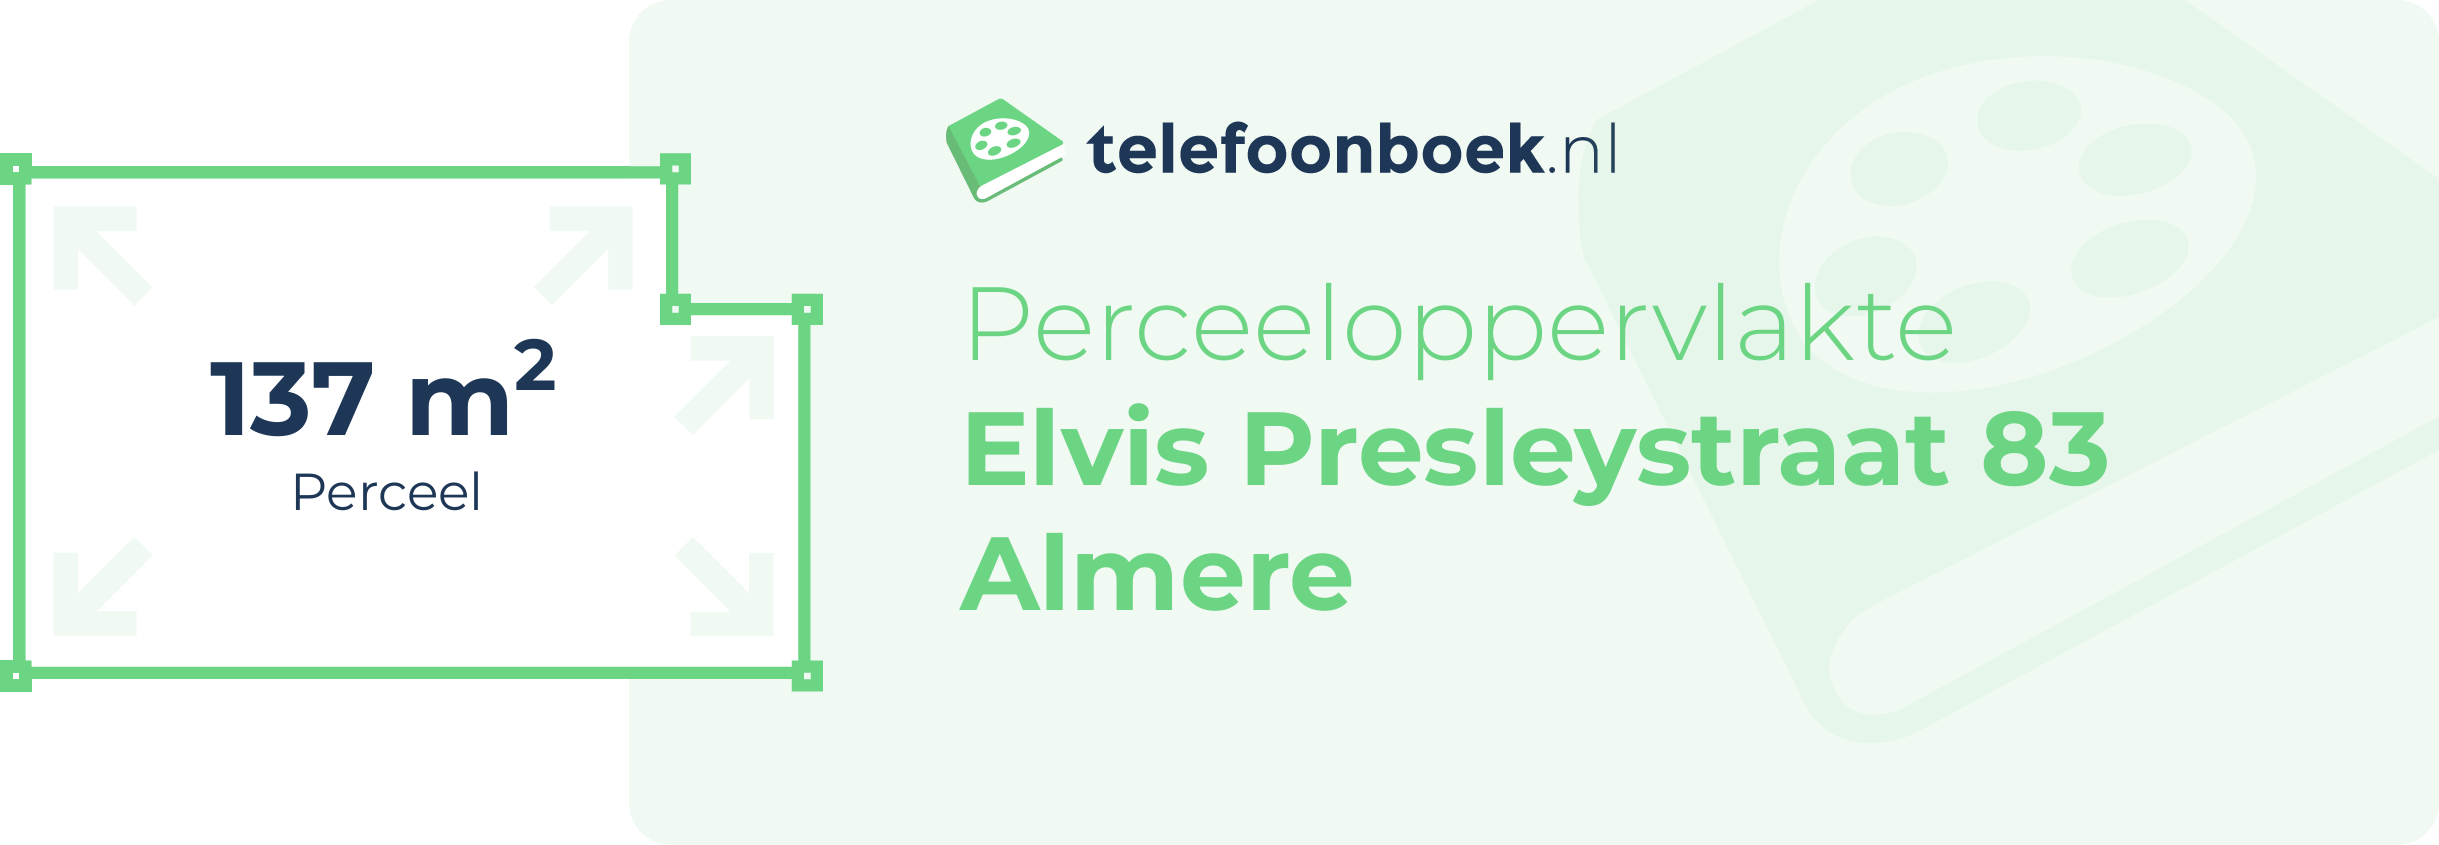 Perceeloppervlakte Elvis Presleystraat 83 Almere